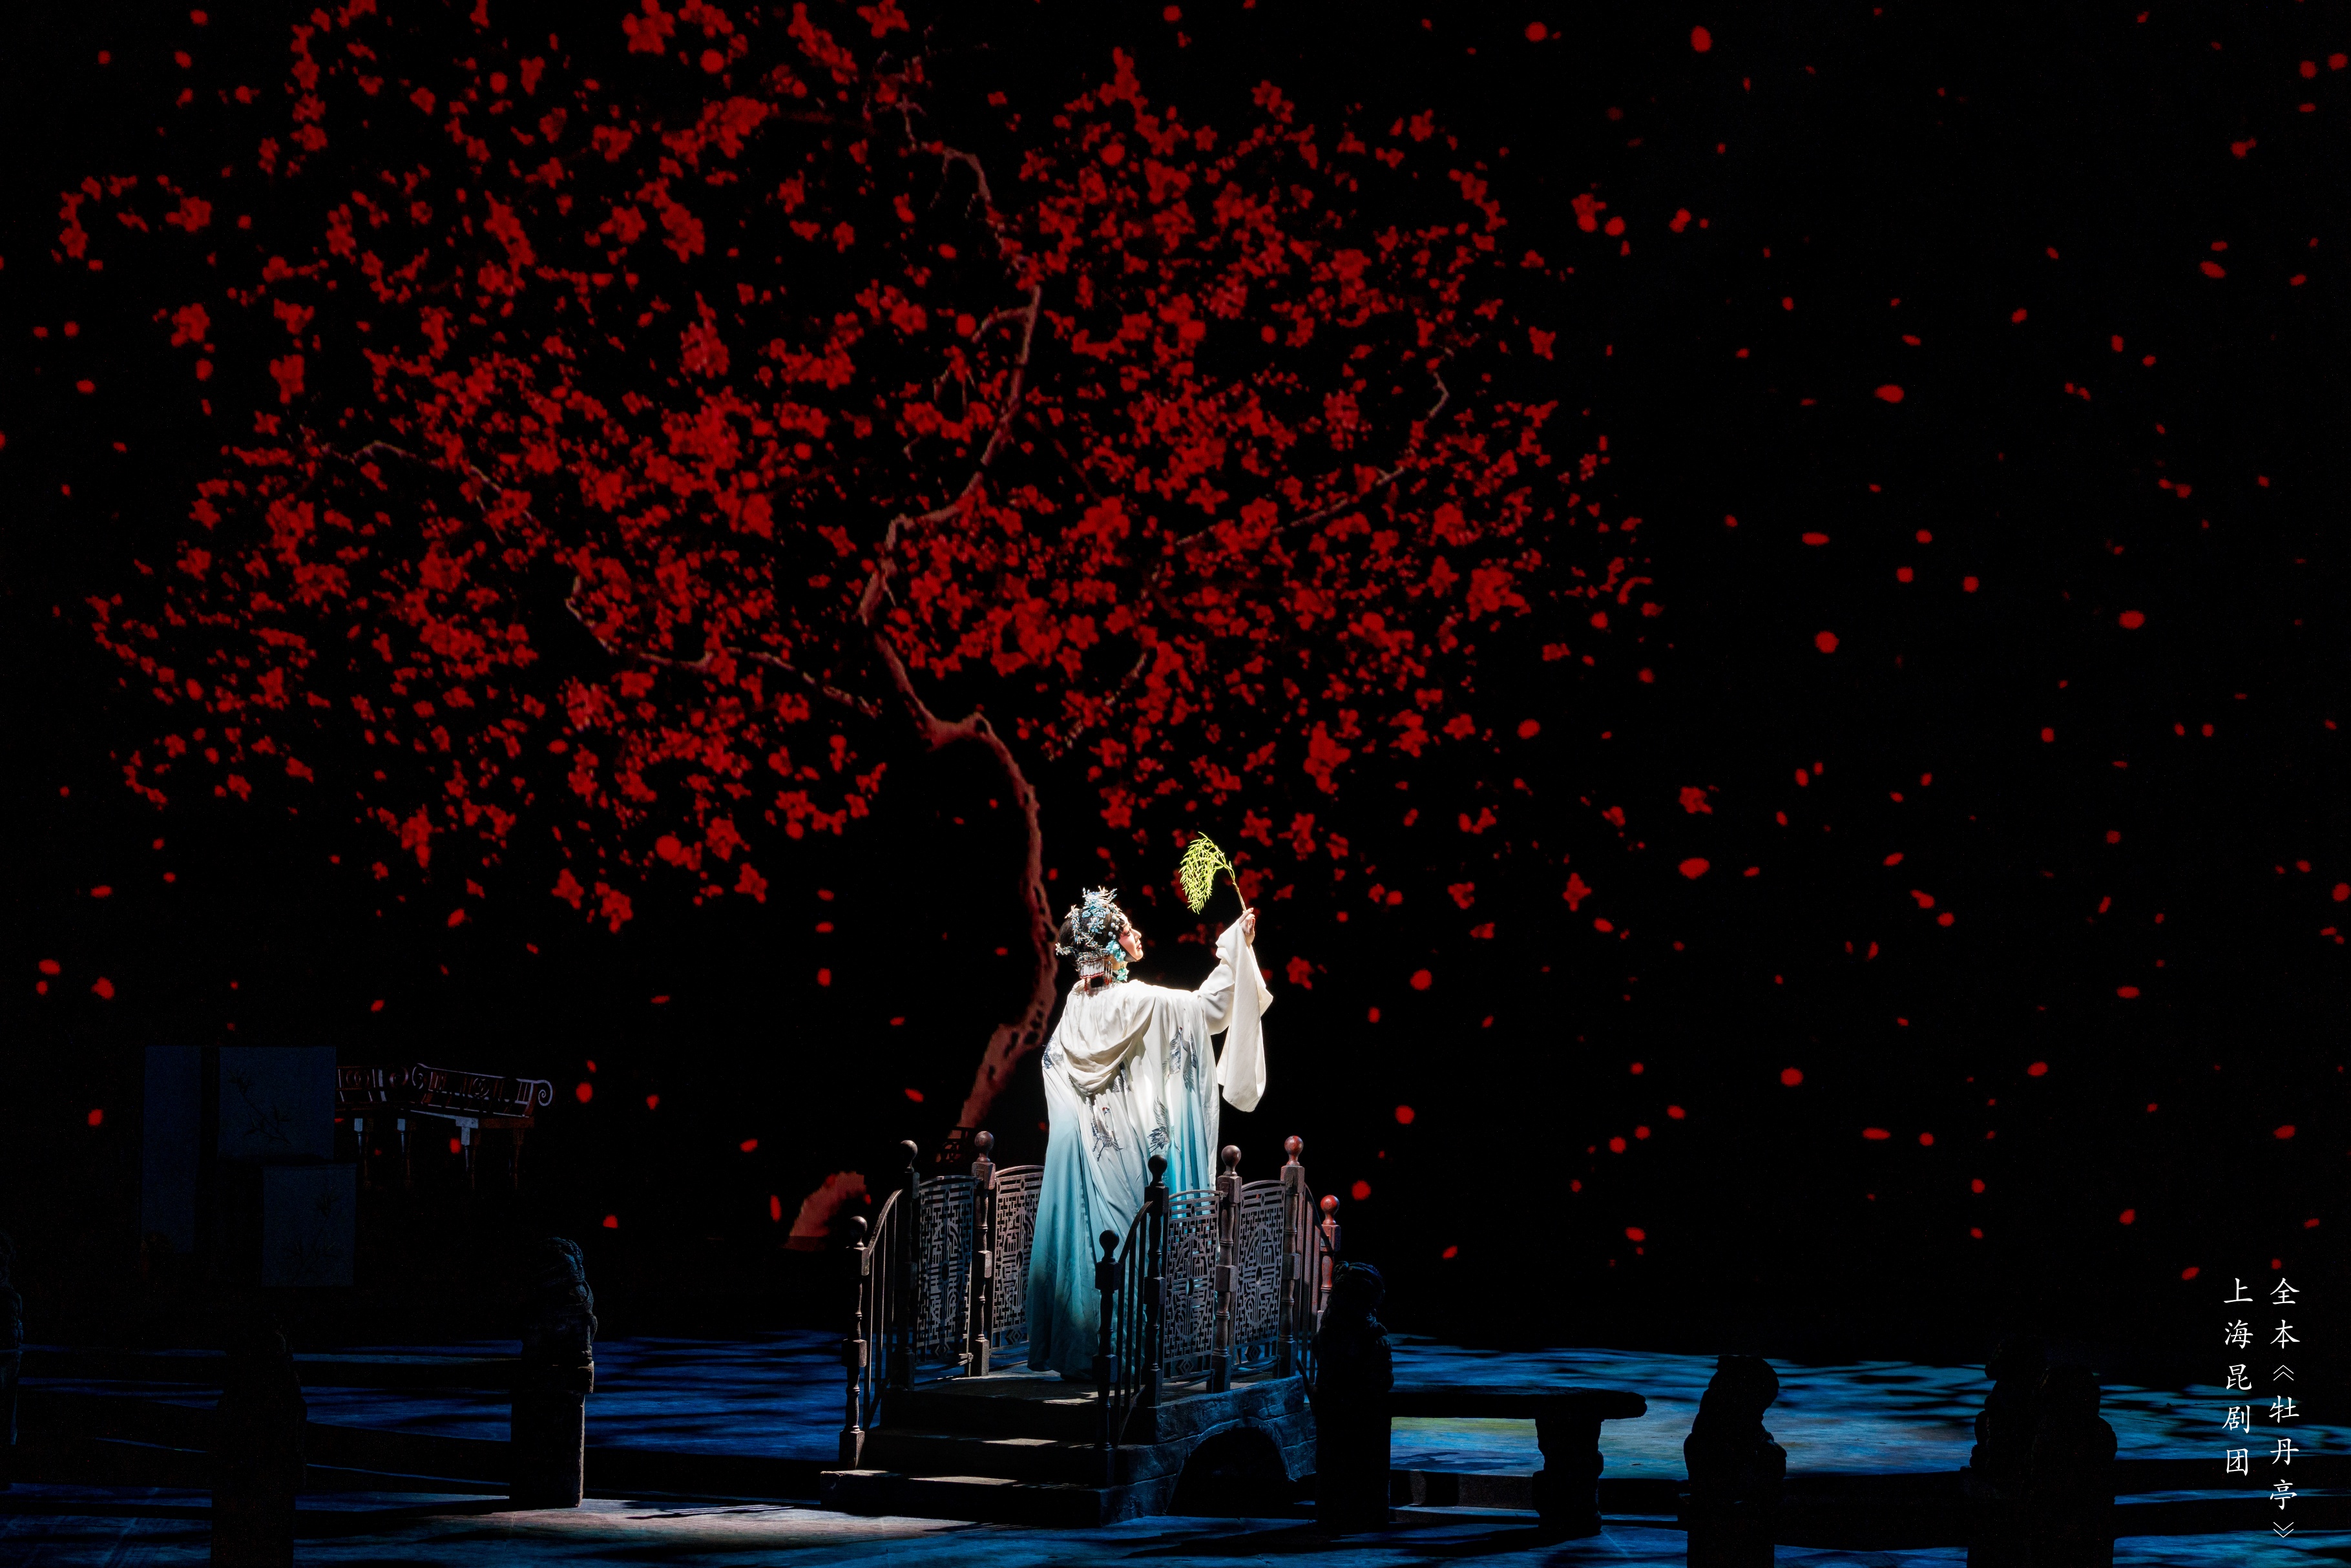 上海崑劇團《牡丹亭》於4月3-5日深圳保利劇院上演